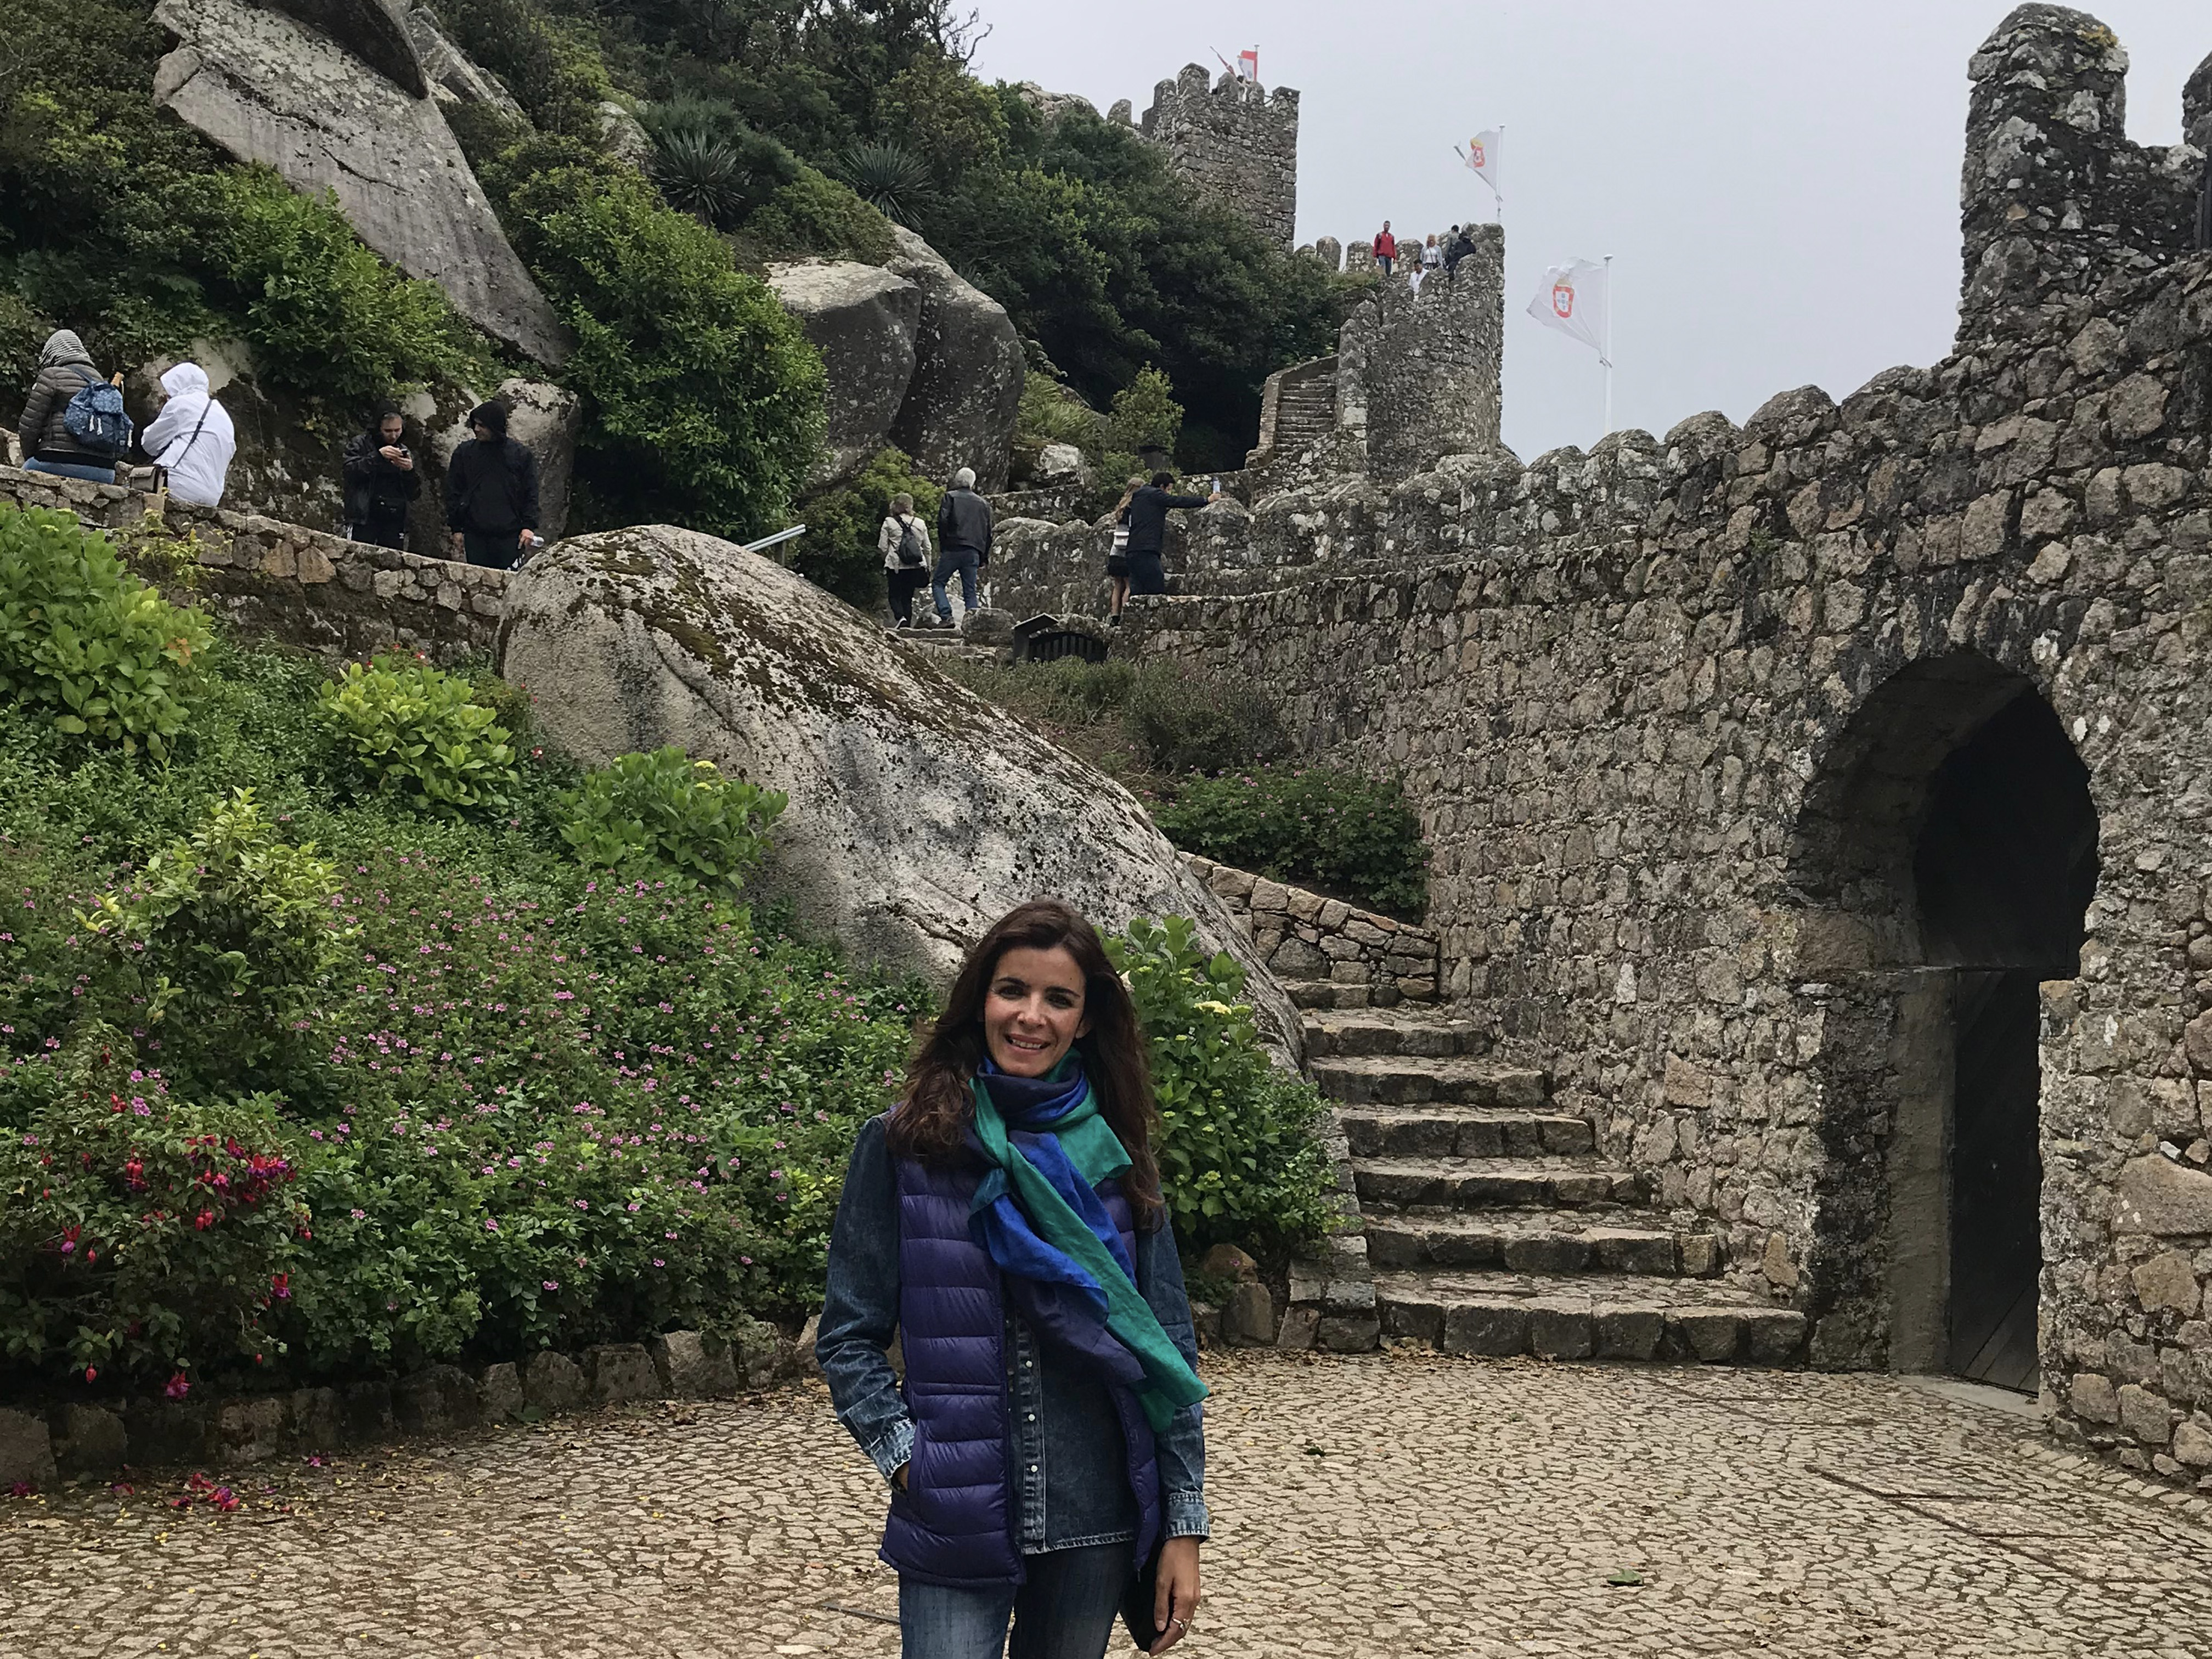 Time off à conquista – Castelo dos Mouros